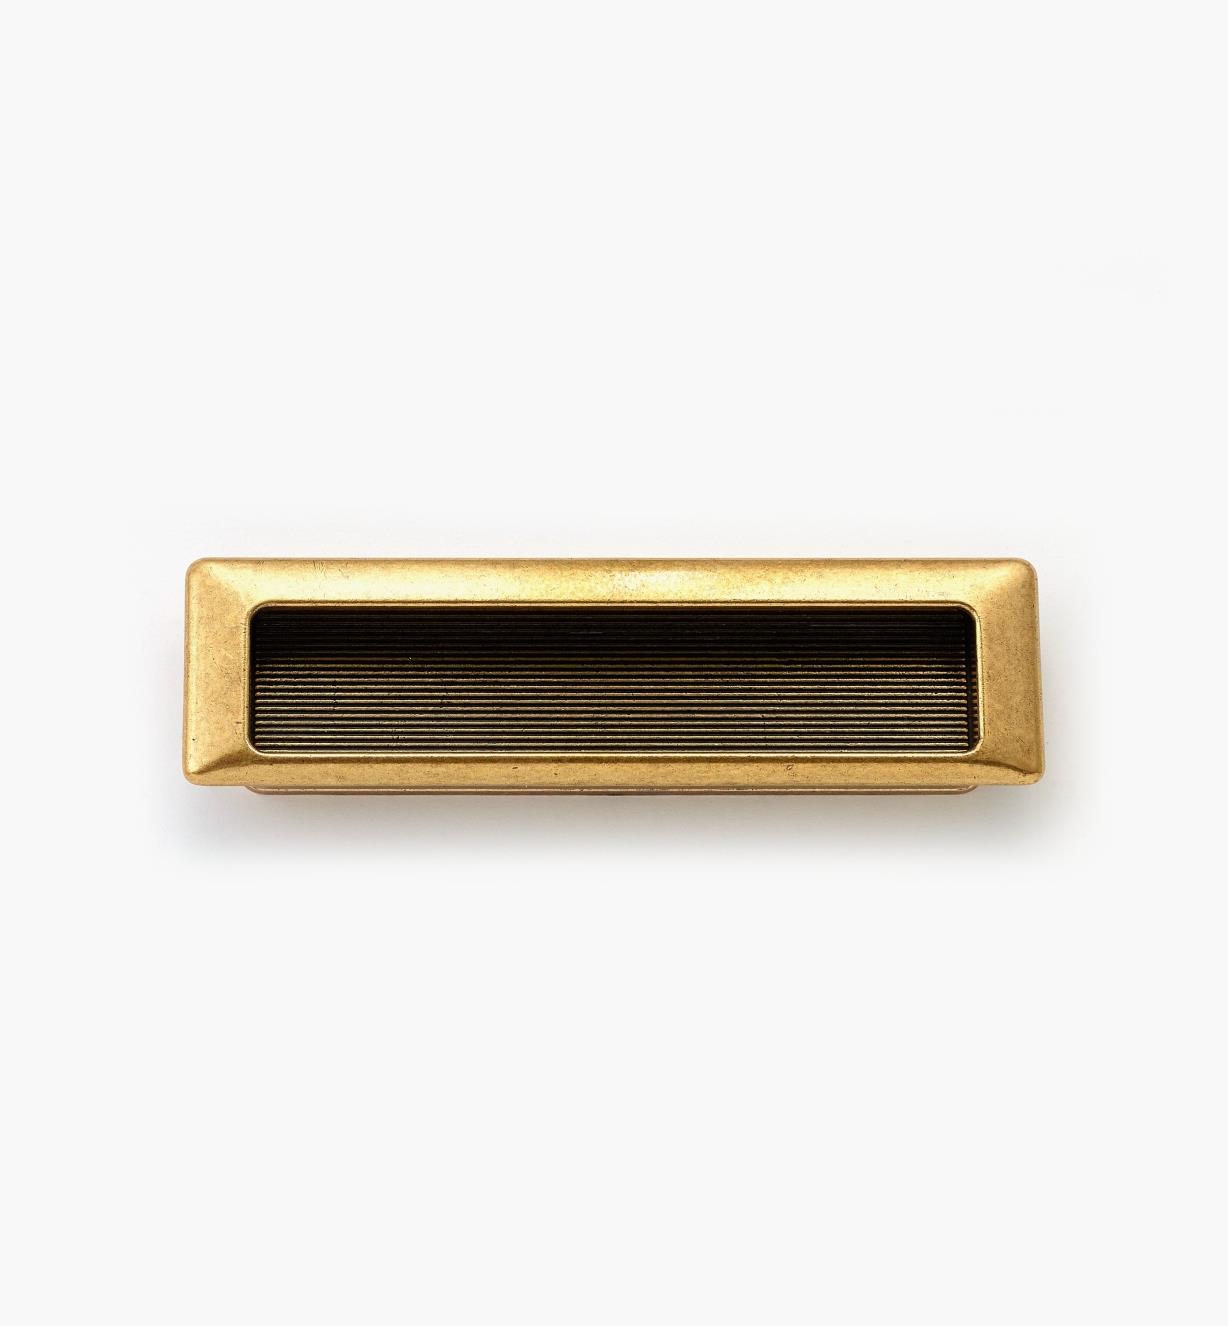 01X4230 - Poignée encastrée rectangulaire, fini bronze bruni, 143 mm x 40 mm